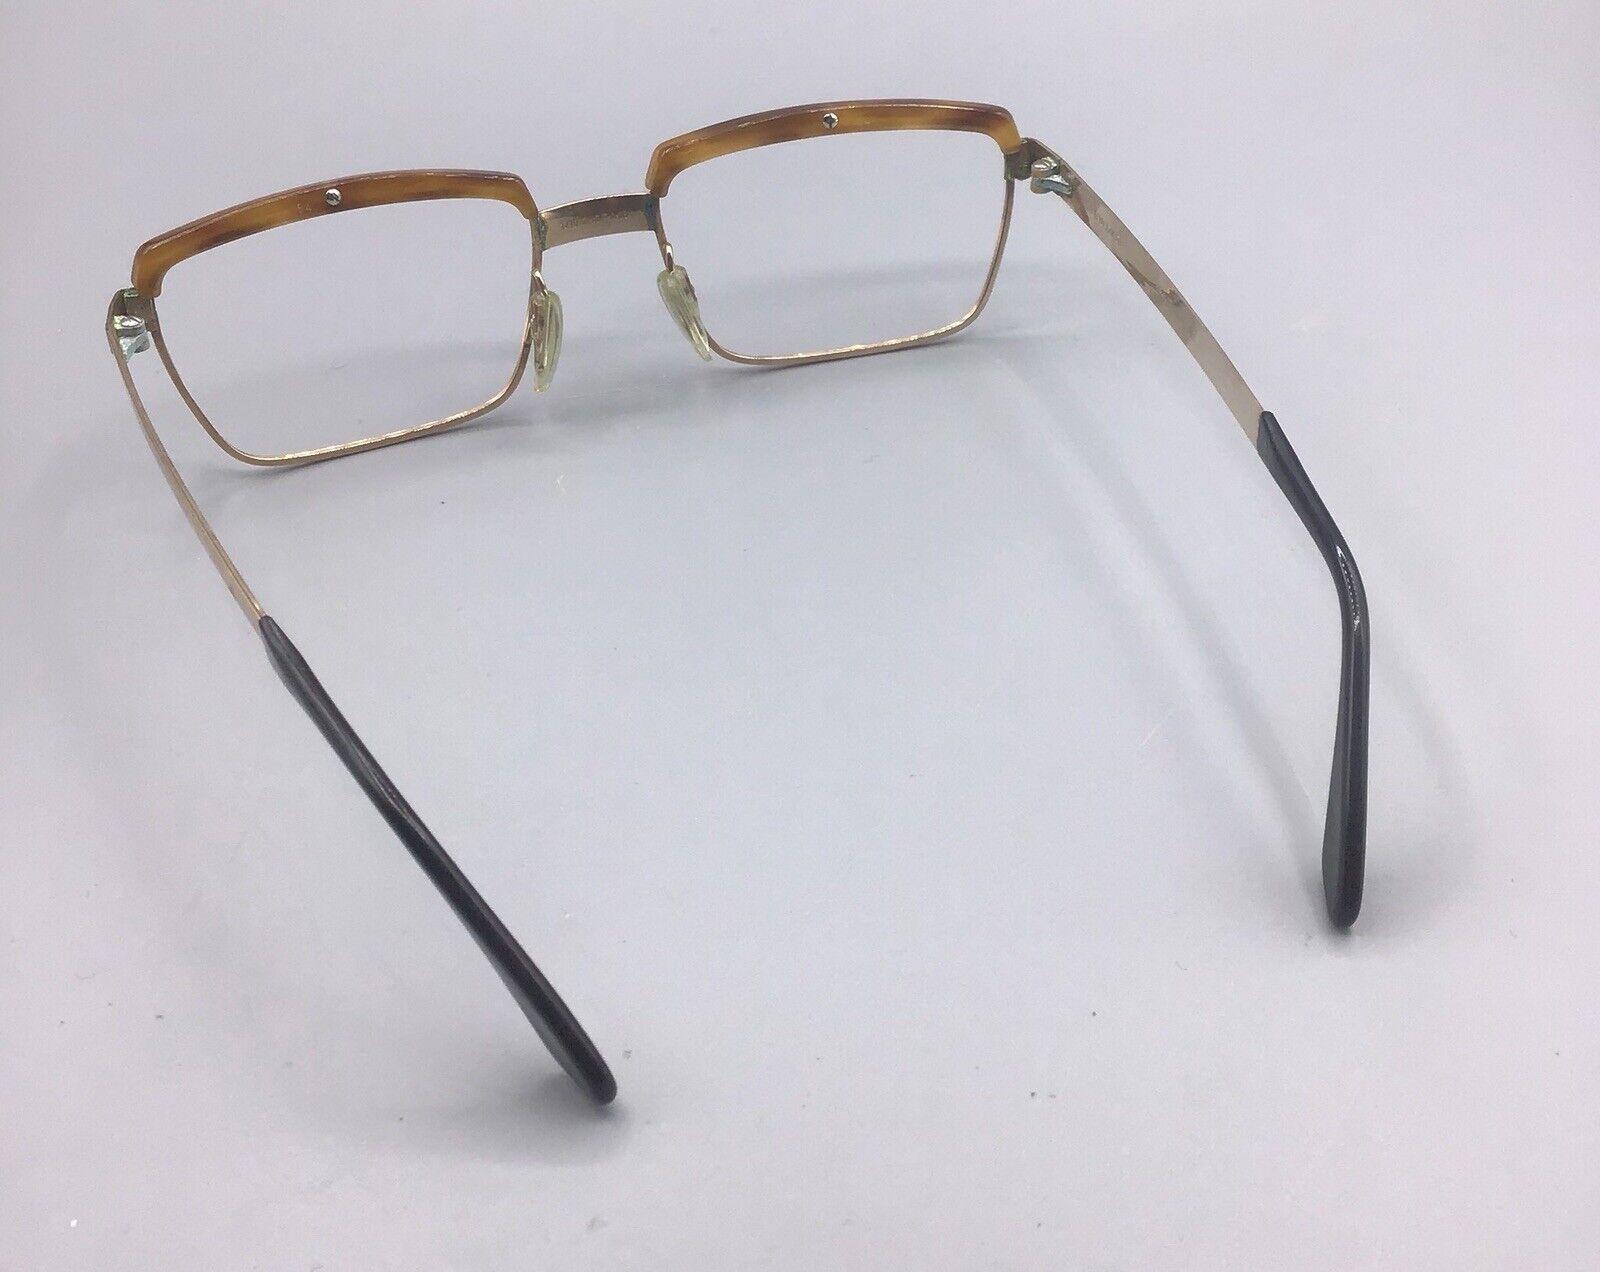 ViennaLine frame Austria 140 5 1/2 occhiale vintage brillen lunettes 1/10 12 KGF